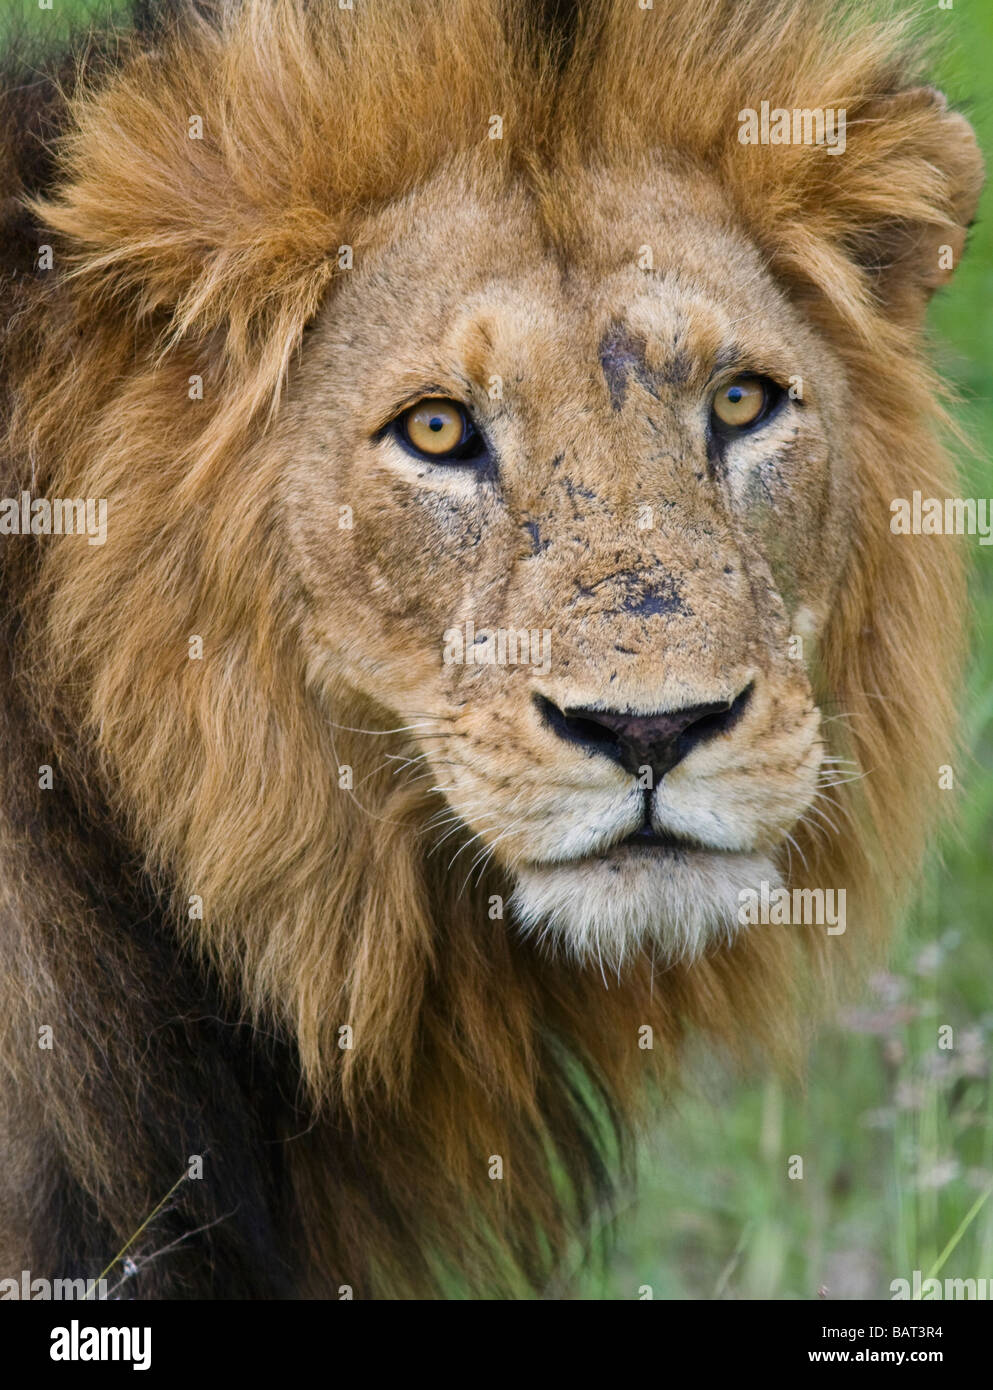 Porträtaugen des Afrikanischen Löwen (Panthera leo) sehen aus der Nahaufnahme in die Kamera. Kruger-Nationalpark Südafrika Stockfoto